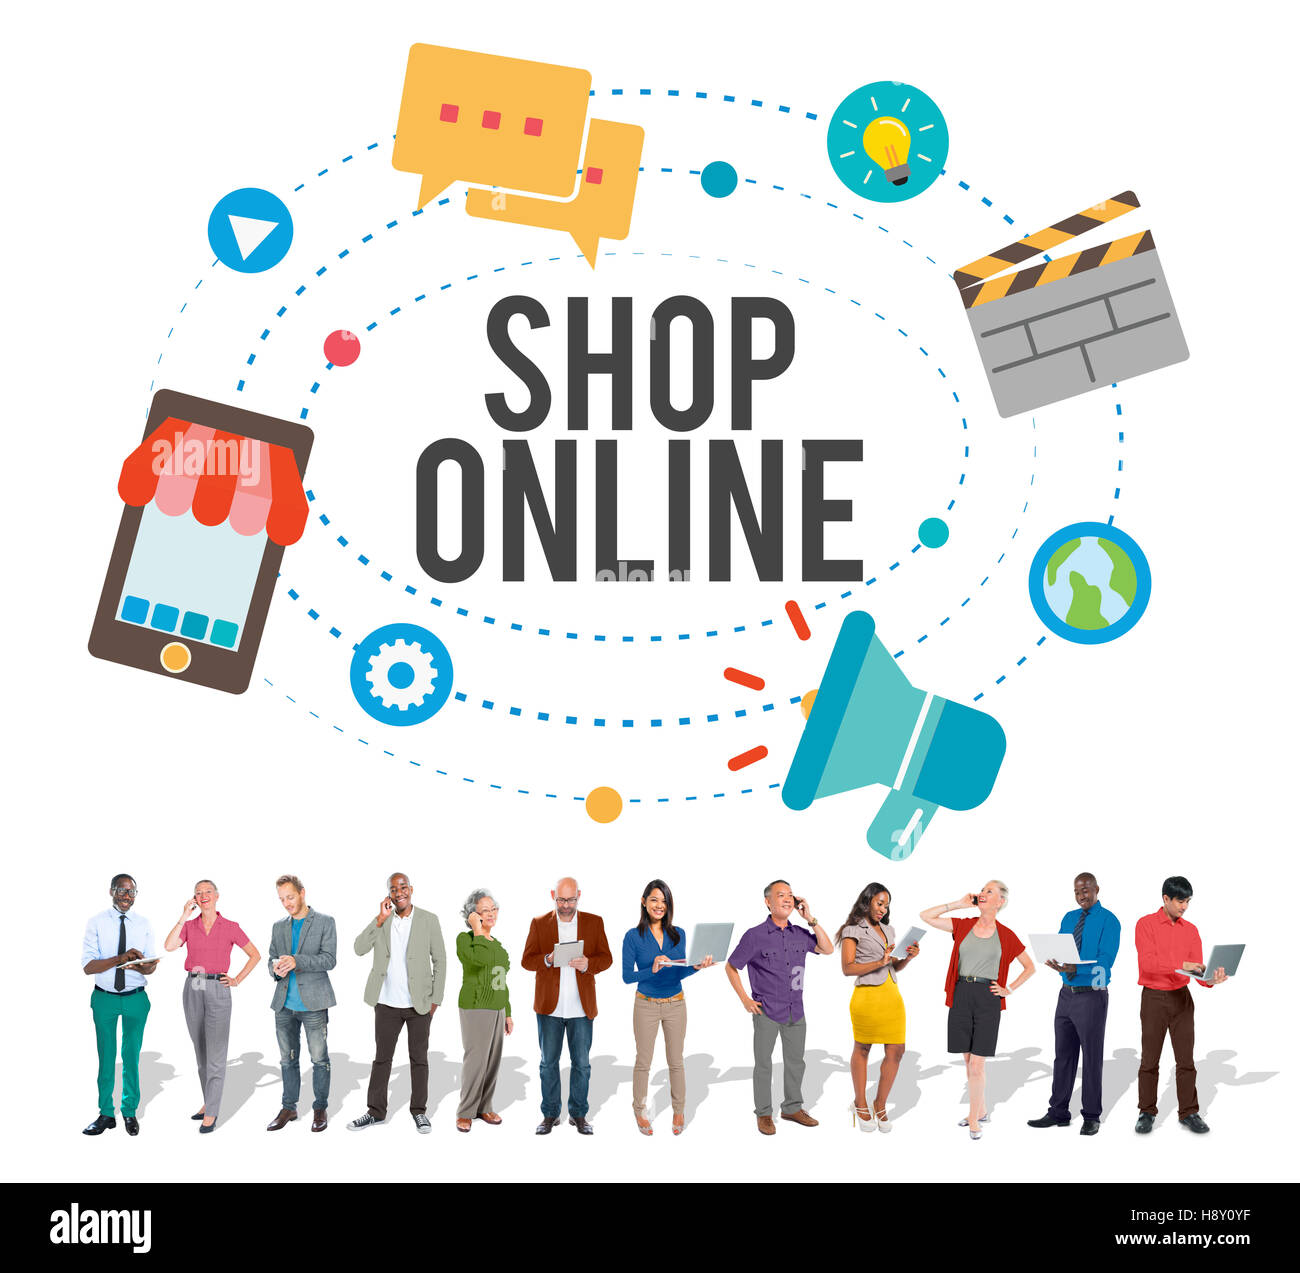 Shop Online E-commerce Marketing Business Concept Stock Photo